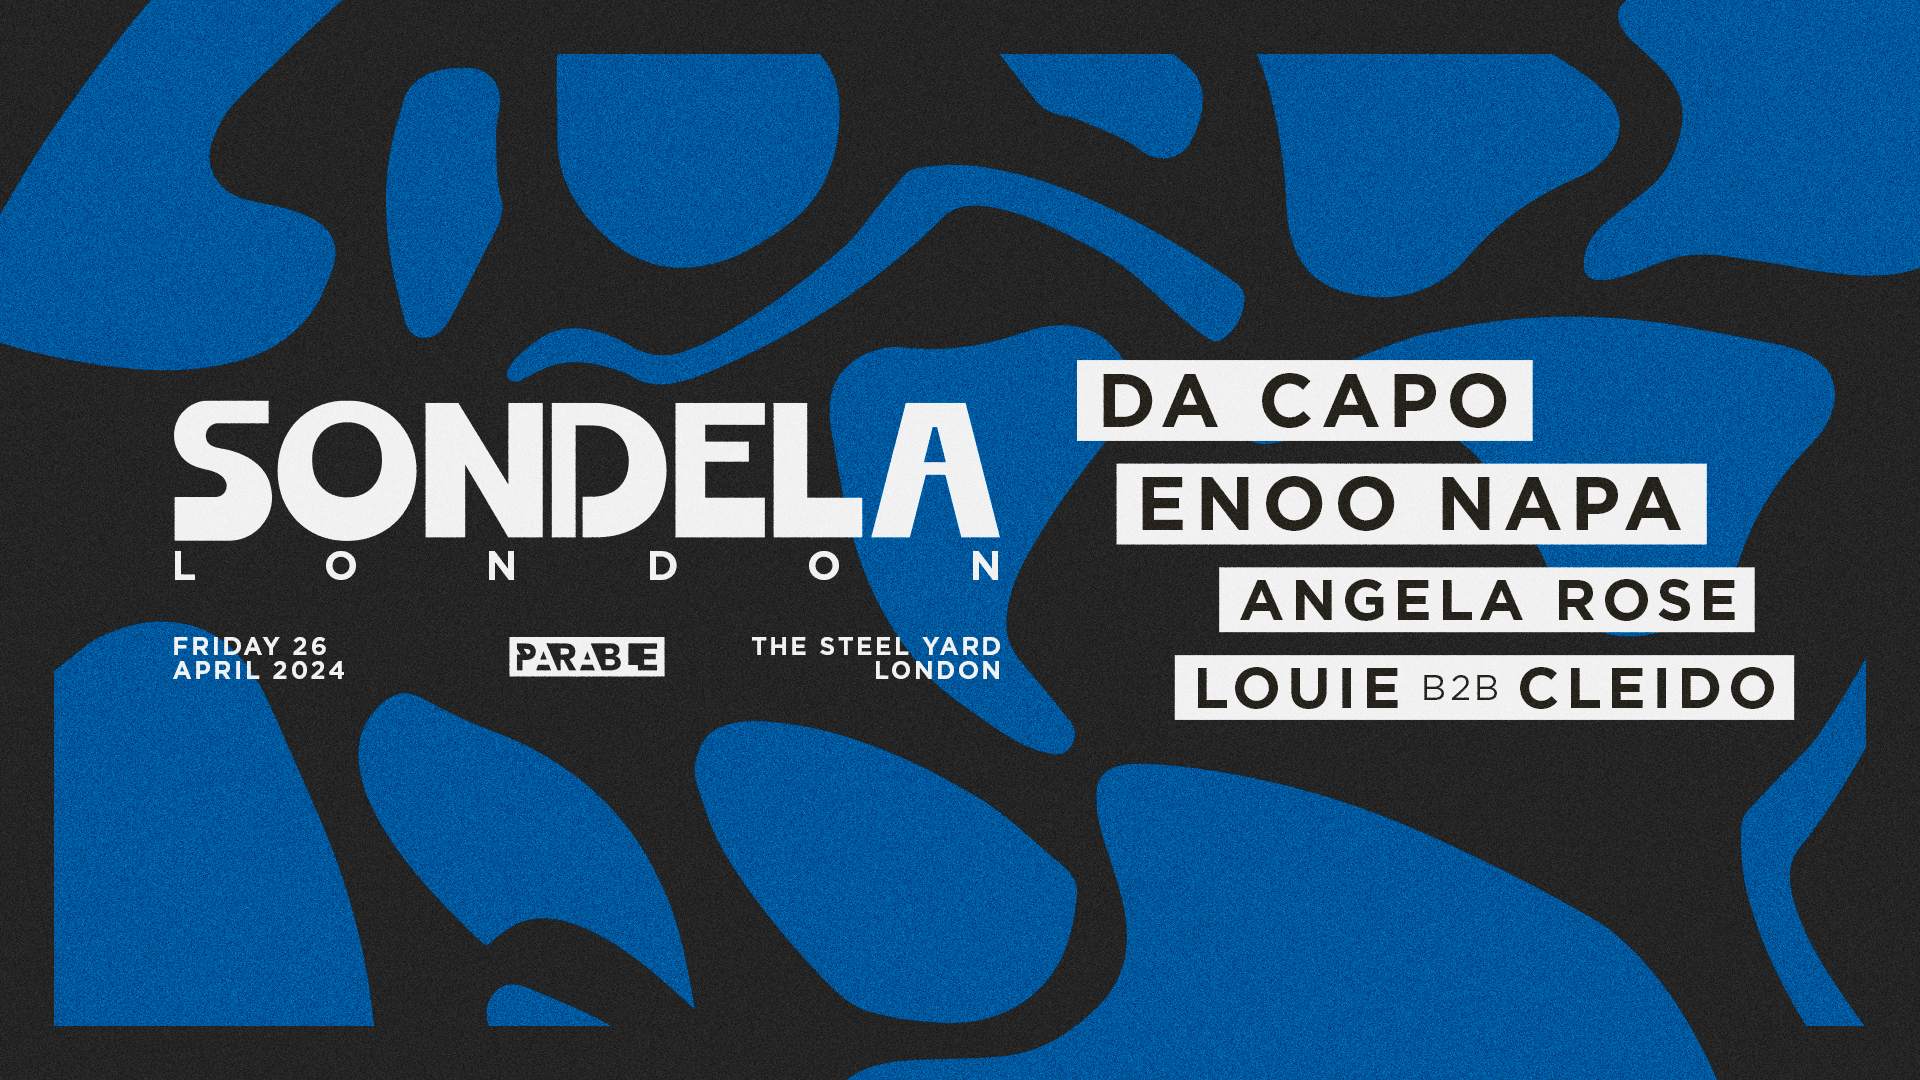 Sondela presents: Da Capo & Enoo Napa - Página frontal